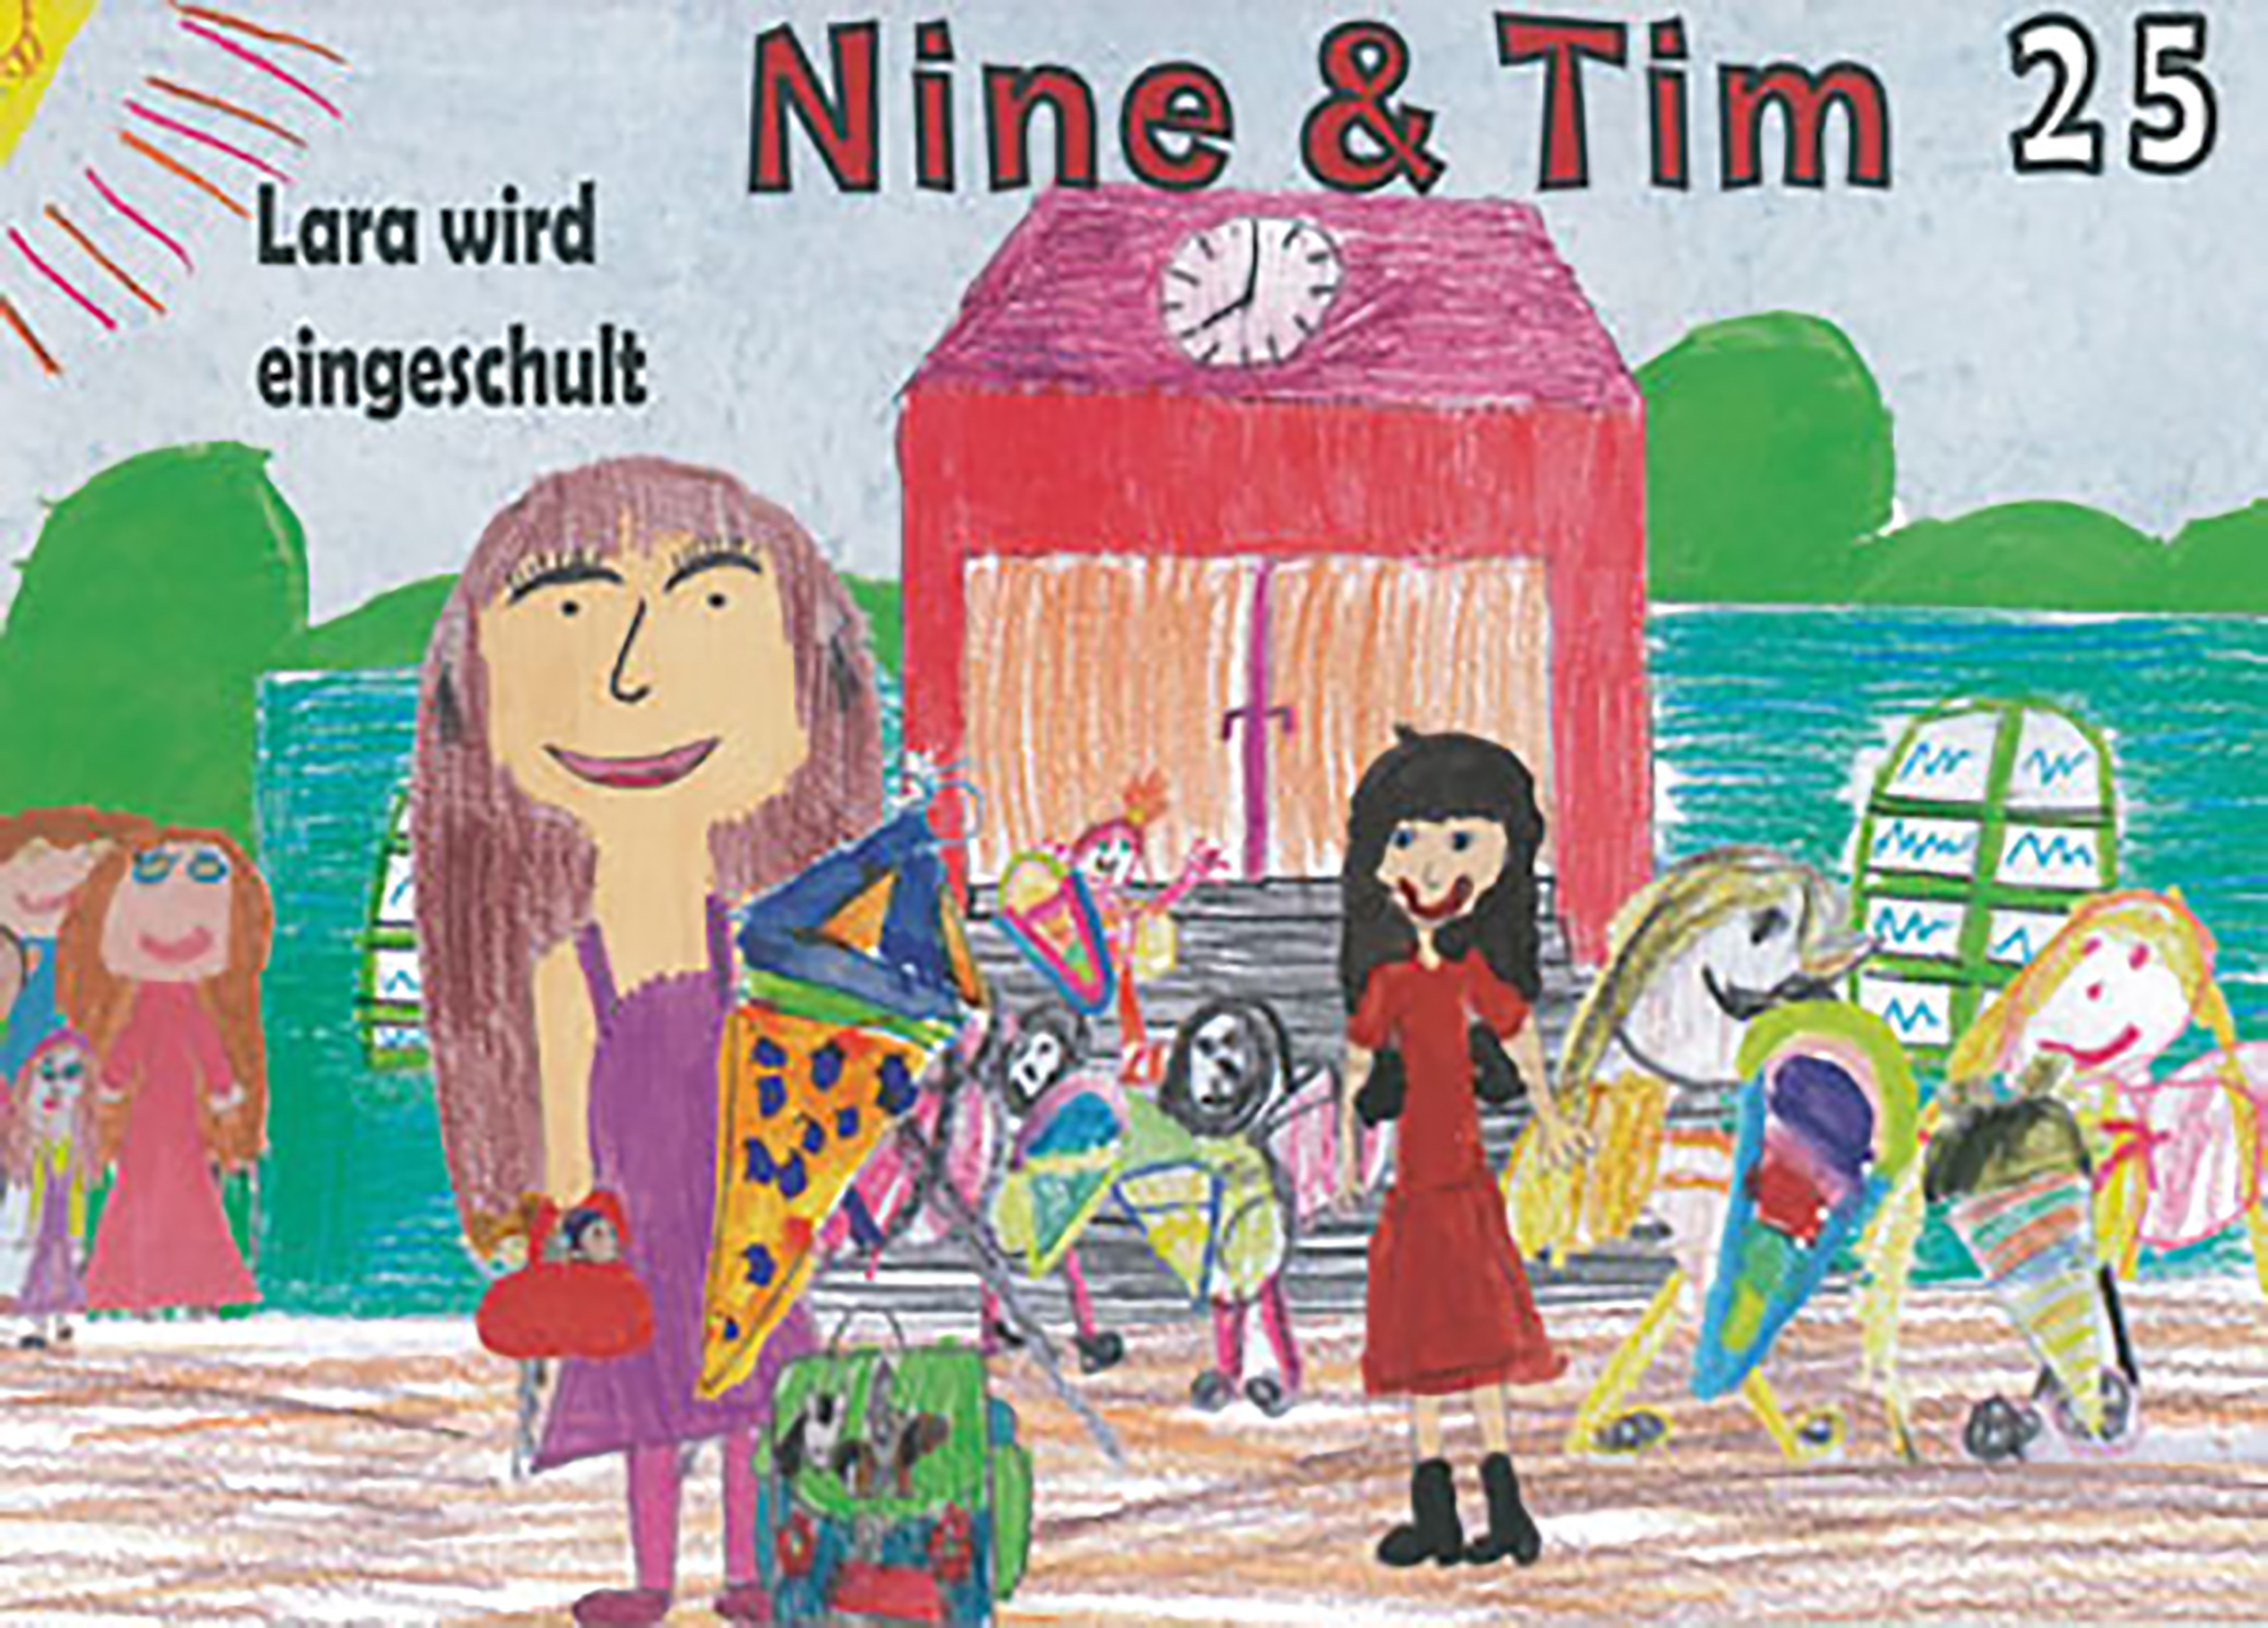 Das Bild zeigt ein Cover der Publikation Nine  Tim Heft 25